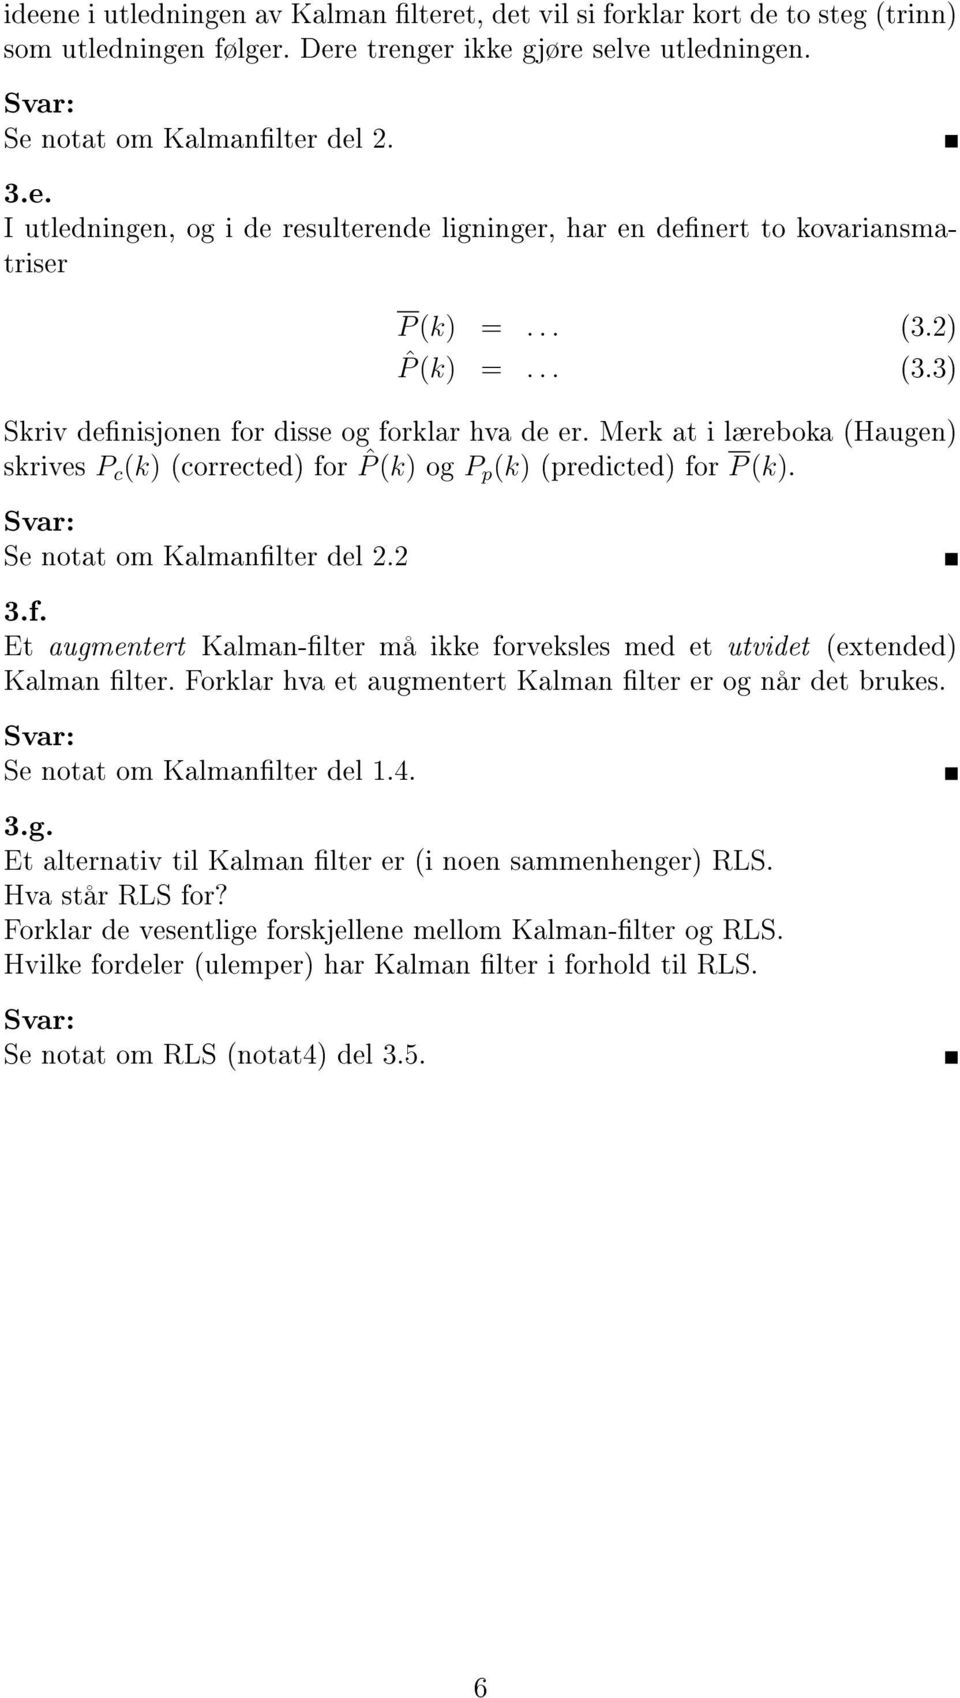 2 3.f. Et augmentert Kalman-lter må ikke forveksles me et utviet (extene) Kalman lter. Forklar hva et augmentert Kalman lter er og når et brukes. Se notat om Kalmanlter el 1.4. 3.g. Et alternativ til Kalman lter er (i noen sammenhenger) RLS.